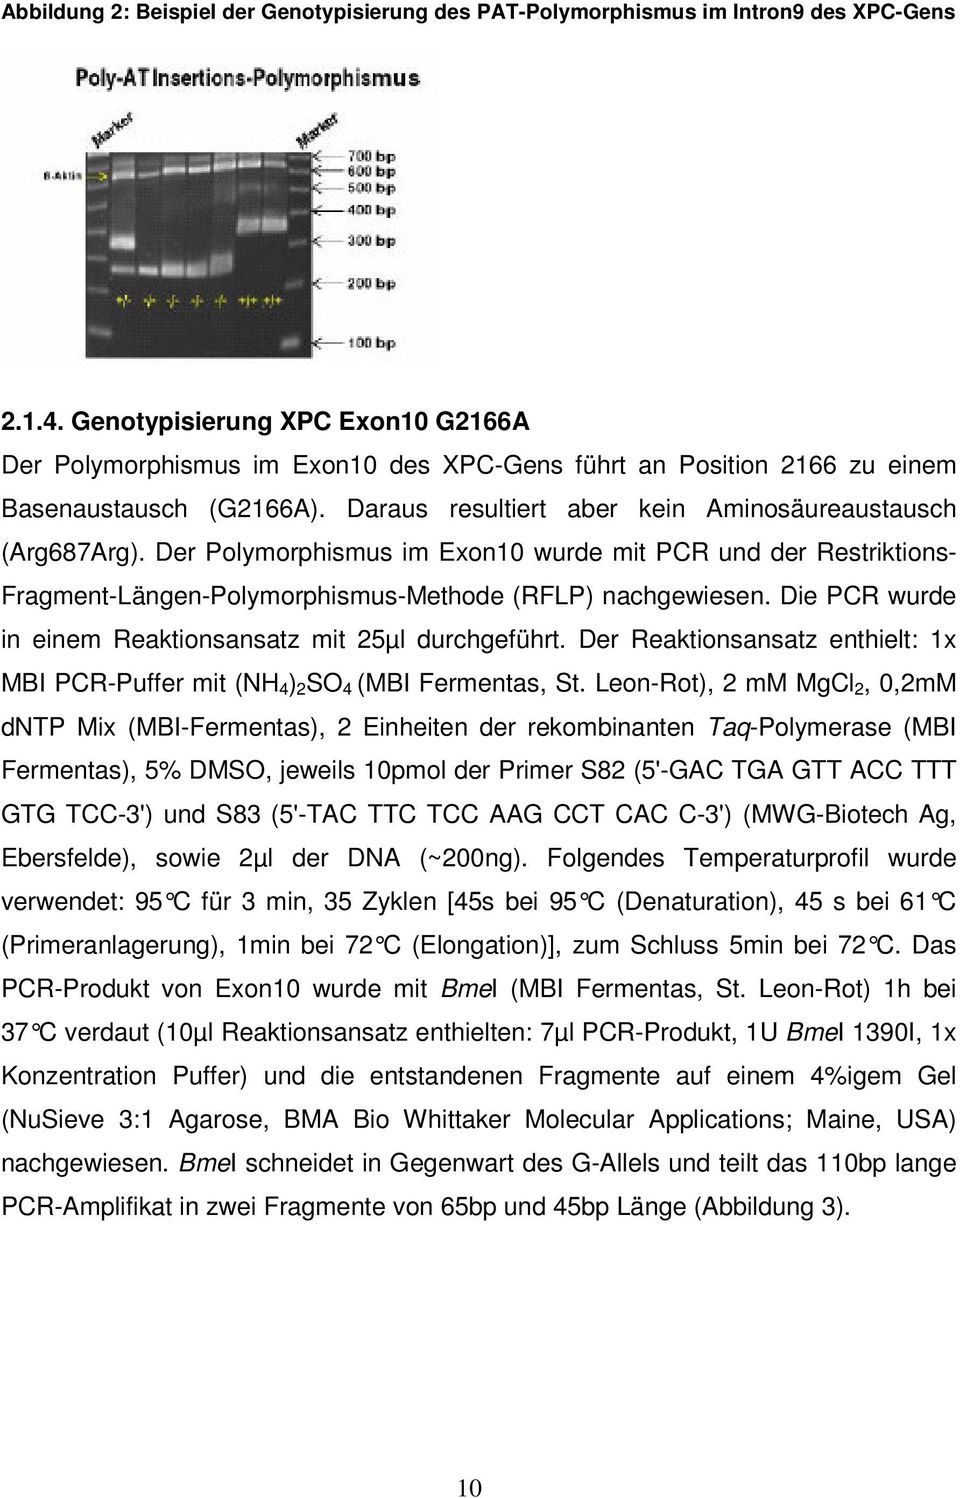 Der Polymorphismus im Exon10 wurde mit PCR und der Restriktions- Fragment-Längen-Polymorphismus-Methode (RFLP) nachgewiesen. Die PCR wurde in einem Reaktionsansatz mit 25µl durchgeführt.